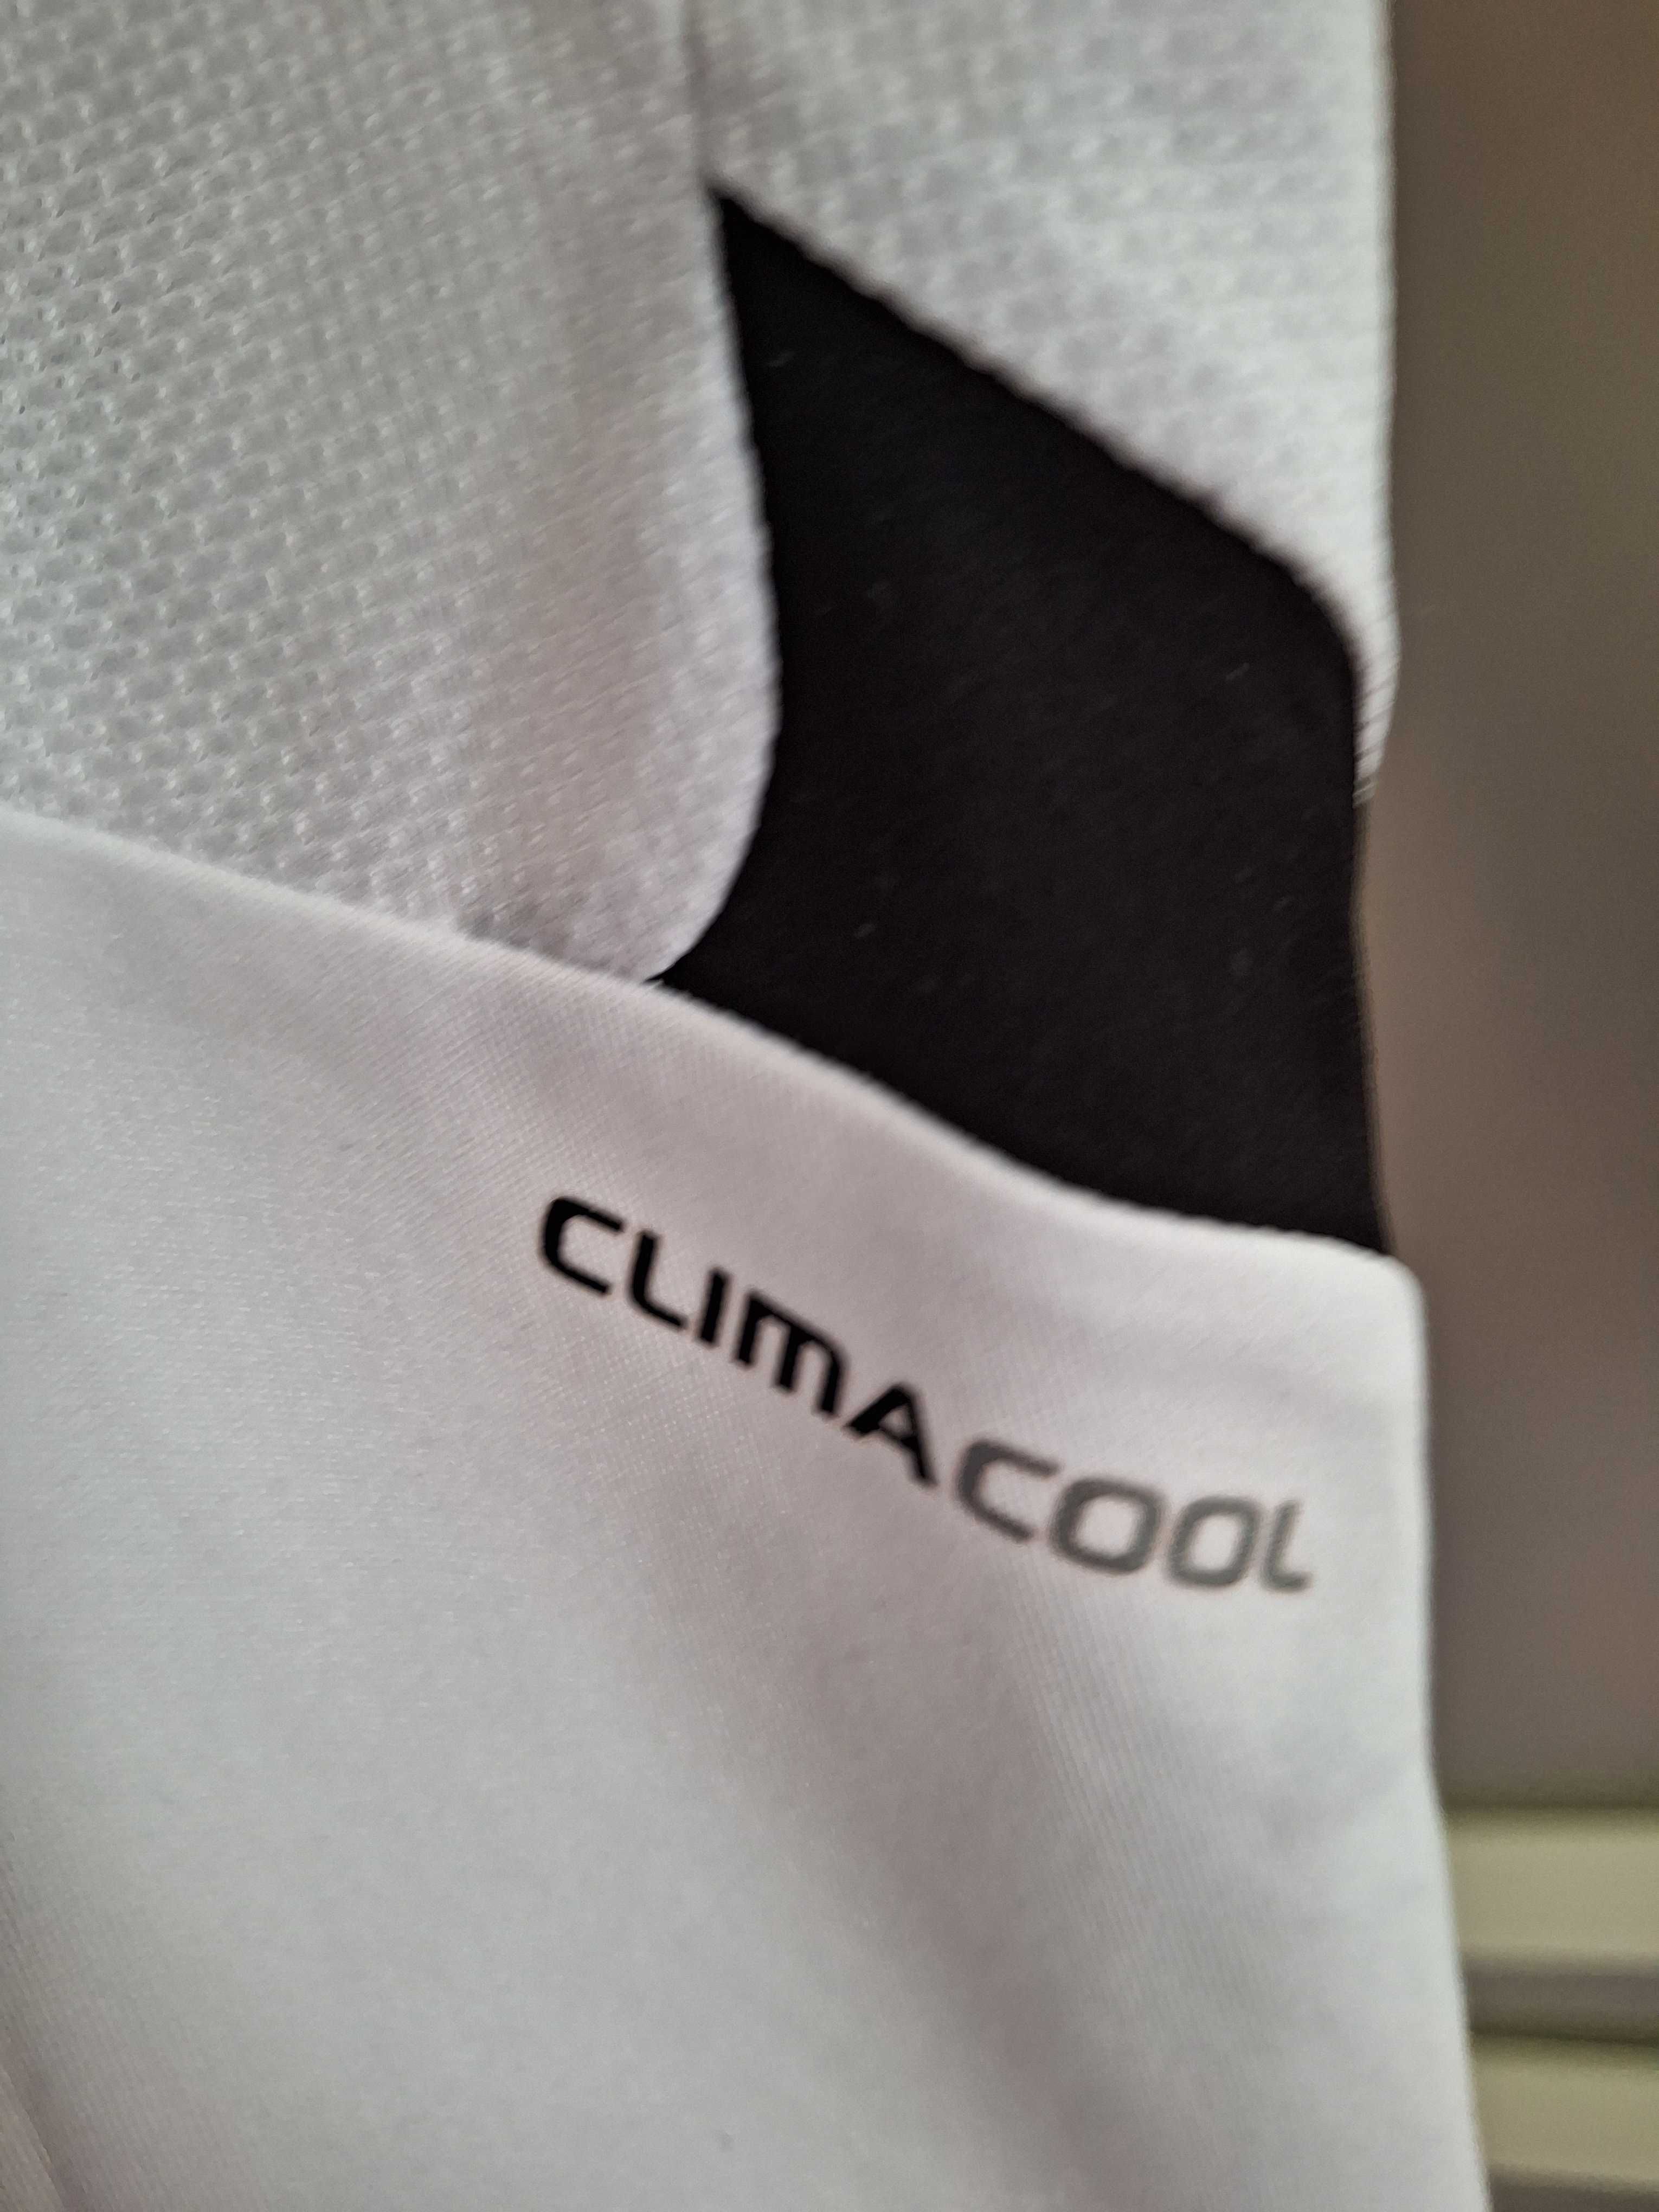 Tricou copii Adidas Clima Cool, 10 ani.